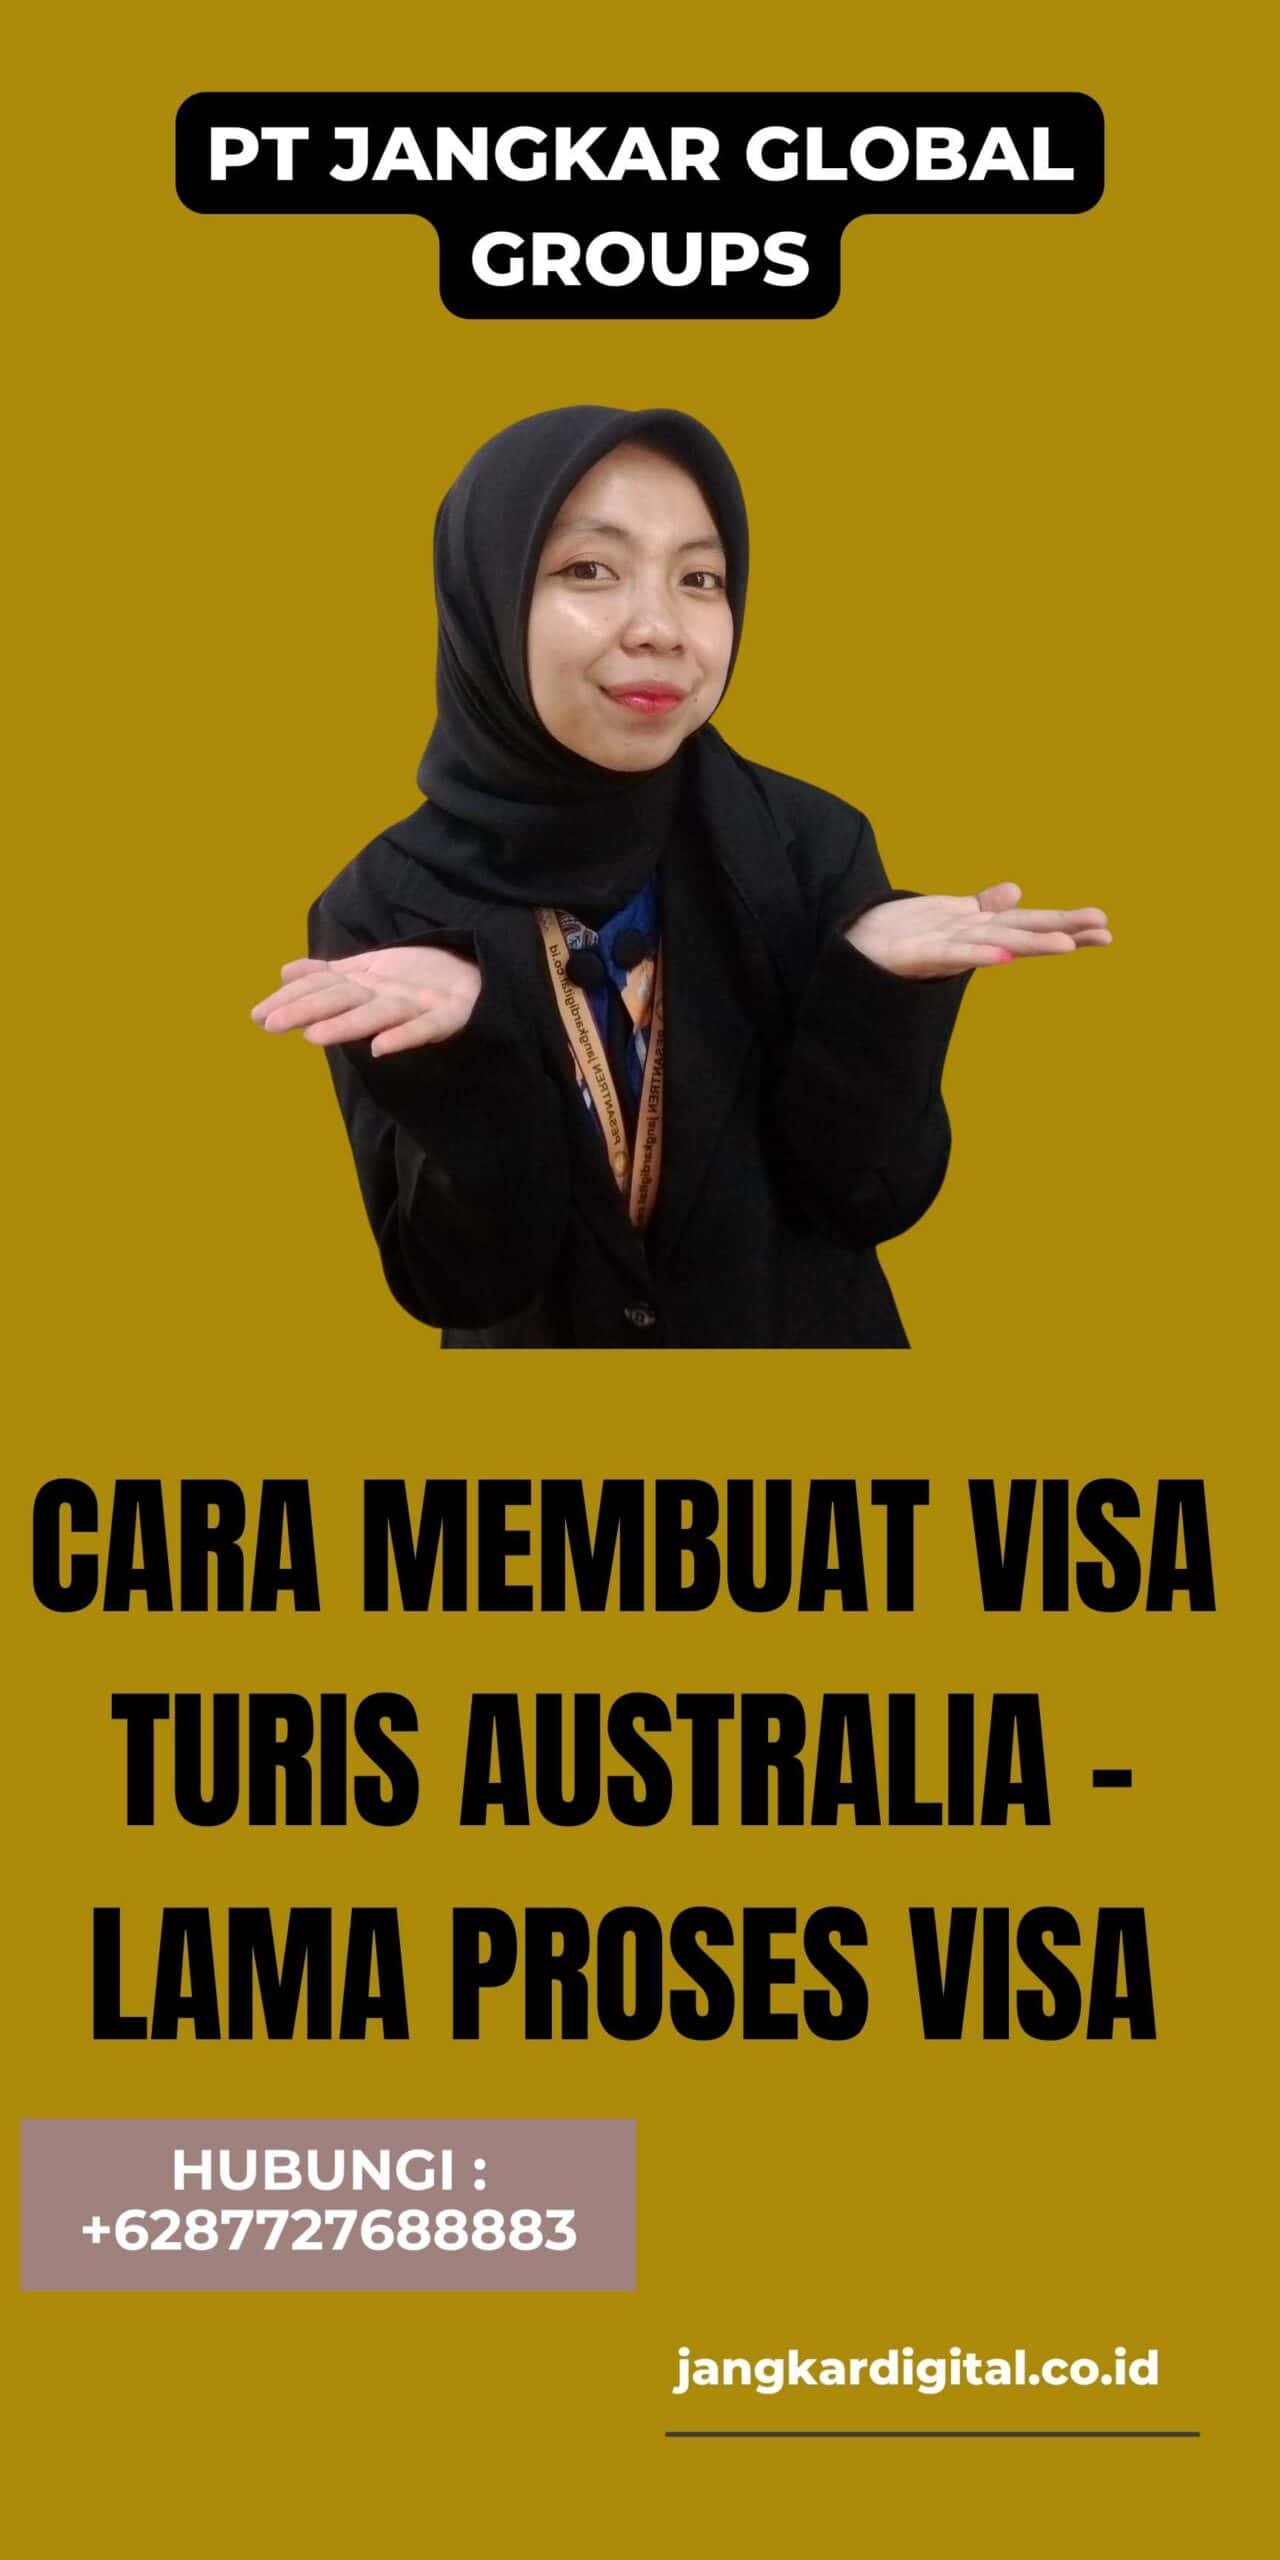 Cara Membuat Visa Turis Australia - Lama Proses Visa